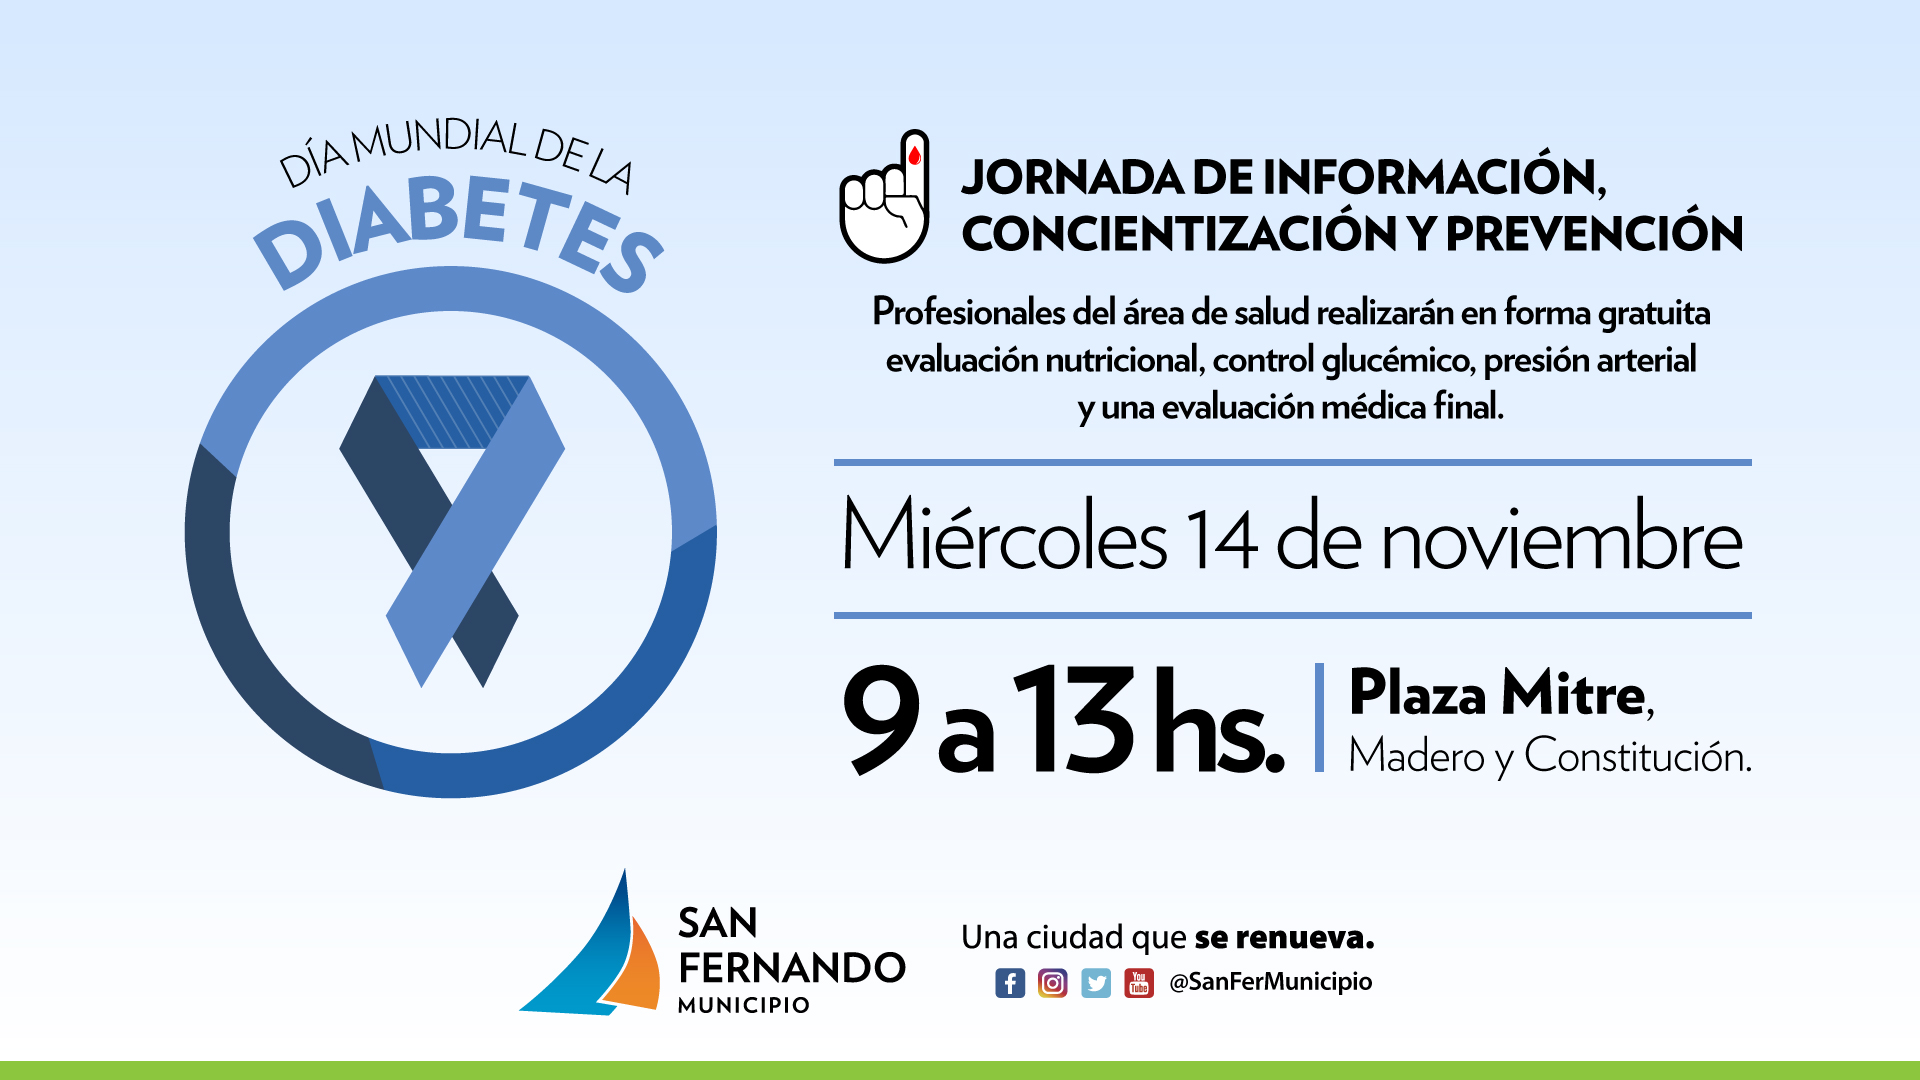  Jornada del “Día Mundial de la Diabetes” en Plaza Mitre